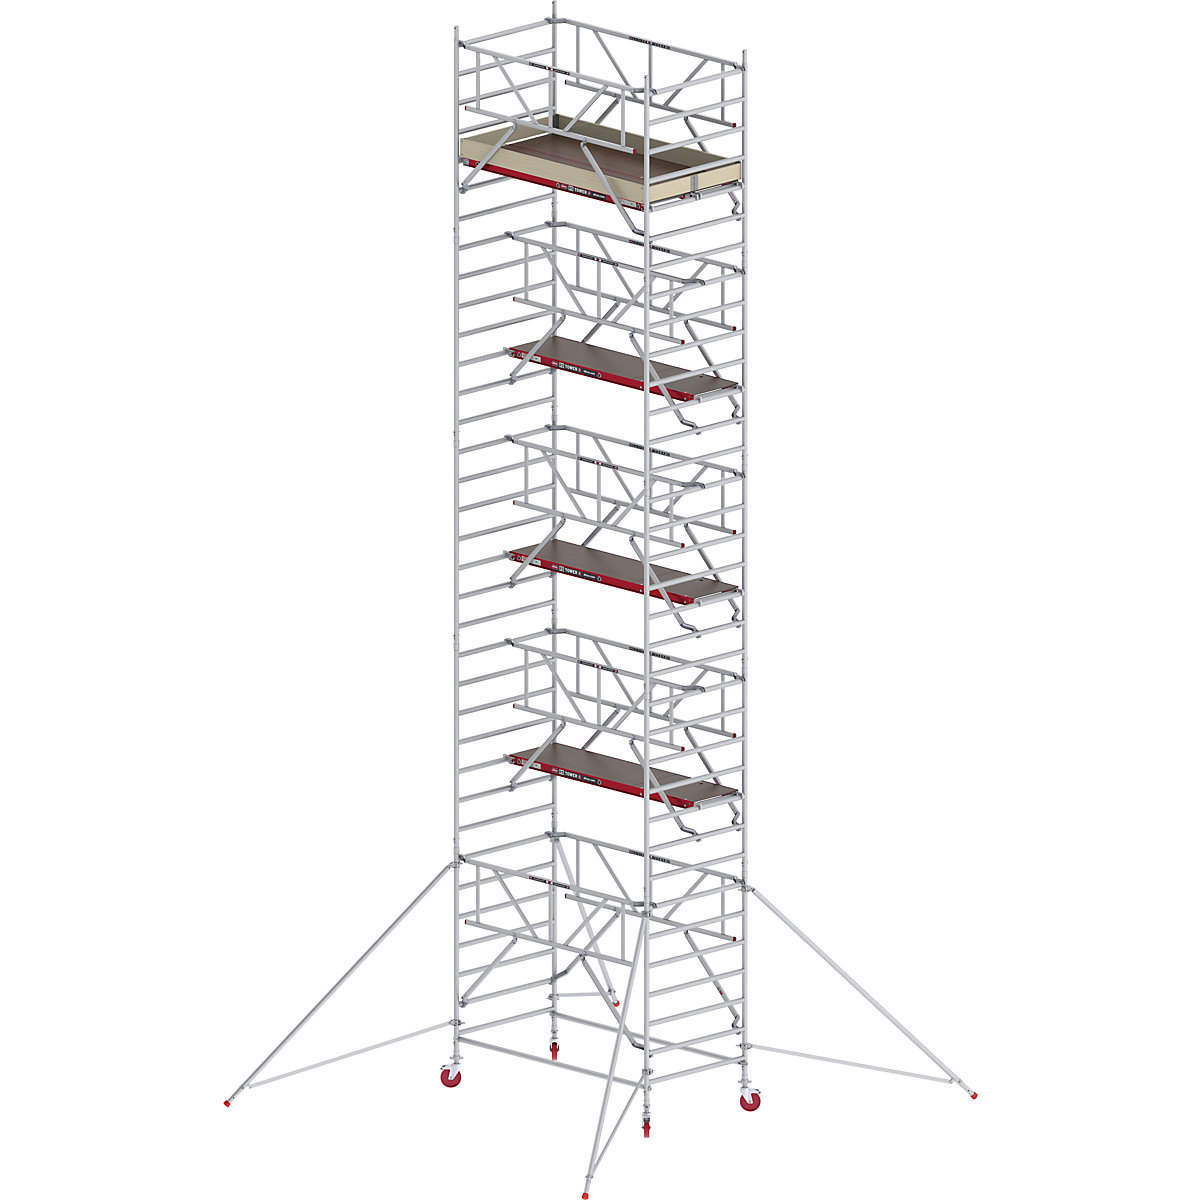 Trabattello mobile RS TOWER 42 largo con Safe-Quick® – Altrex, piattaforma in legno, lunghezza 1,85 m, altezza di lavoro 11,20 m-8